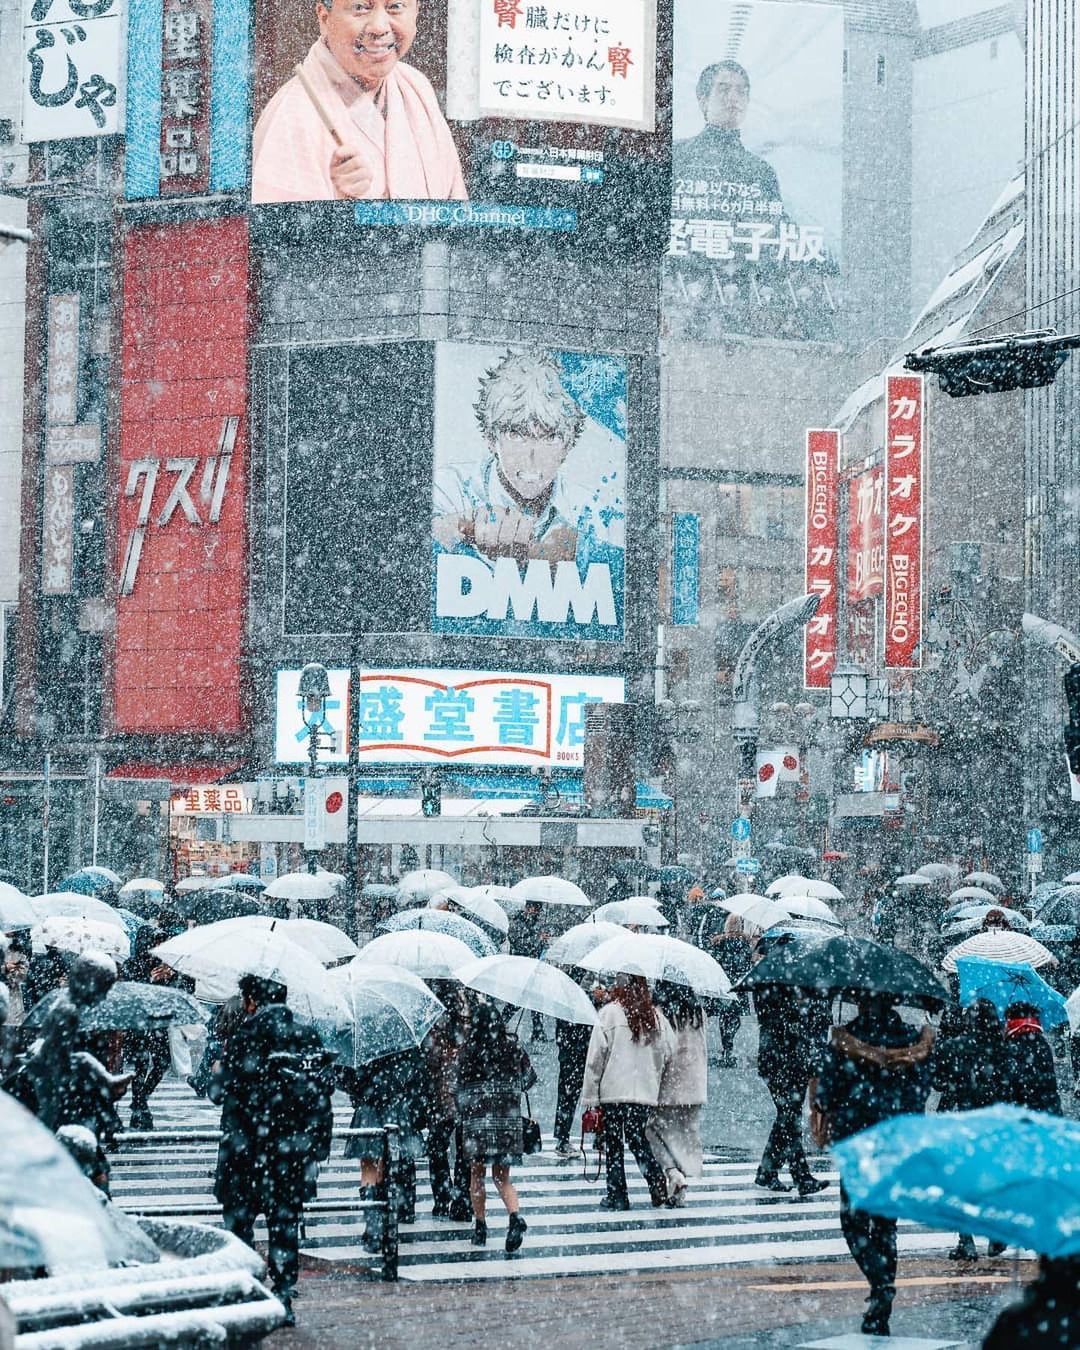 Khung cảnh Tokyo mùa đông, với những đèn lung linh, những đường phố phủ tuyết, tất cả đều tạo ra một bầu không khí đặc biệt vào mùa đông. Hãy xem chùm ảnh này để tận hưởng vẻ đẹp khó cưỡng của Tokyo trong mùa đông.